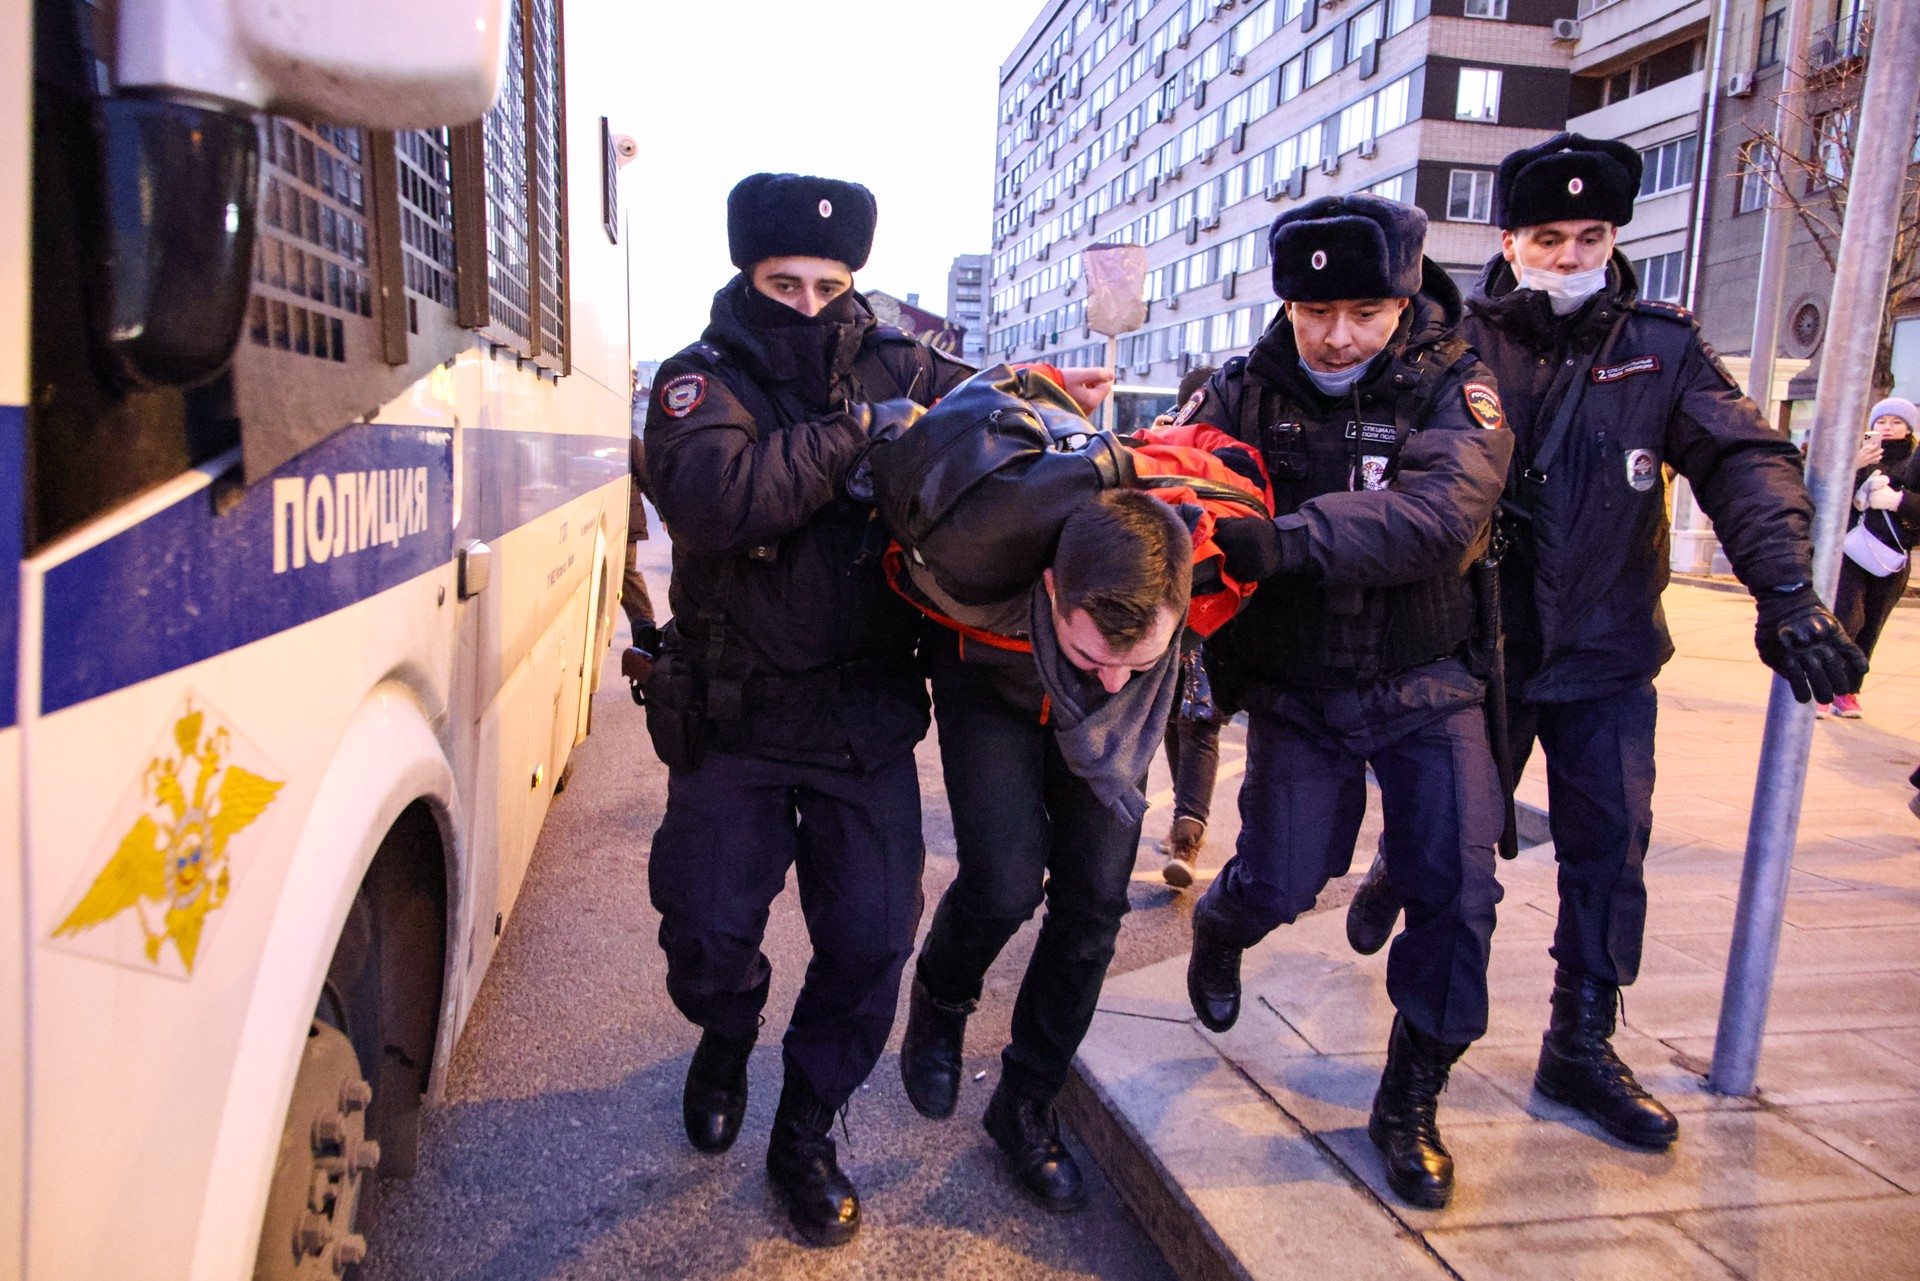 Политолог: Запад может попытаться организовать в России несанкционированные митинги после смерти Навального*